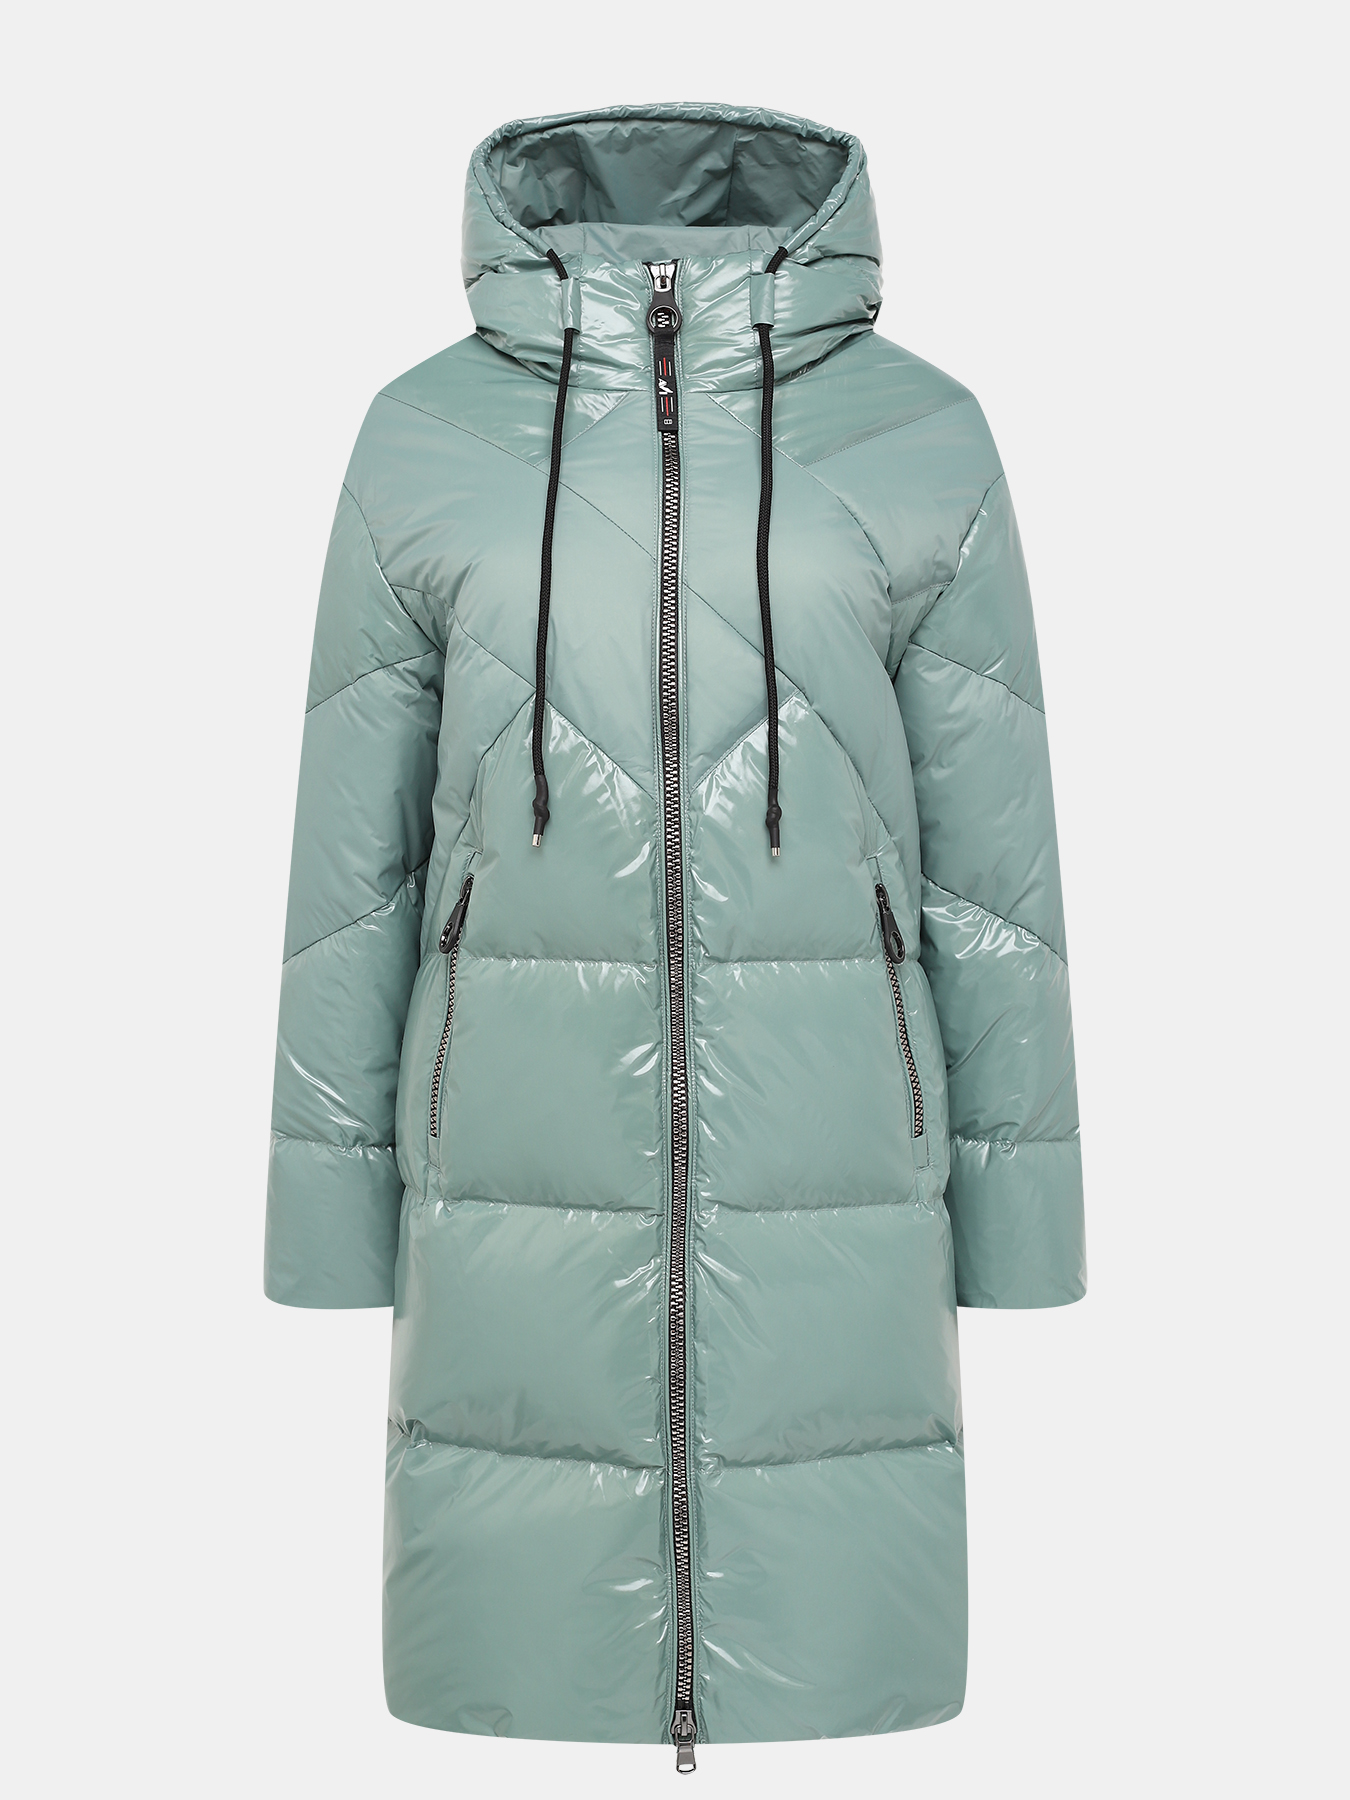 Пальто зимнее AVI 433635-023, цвет мятный, размер 50